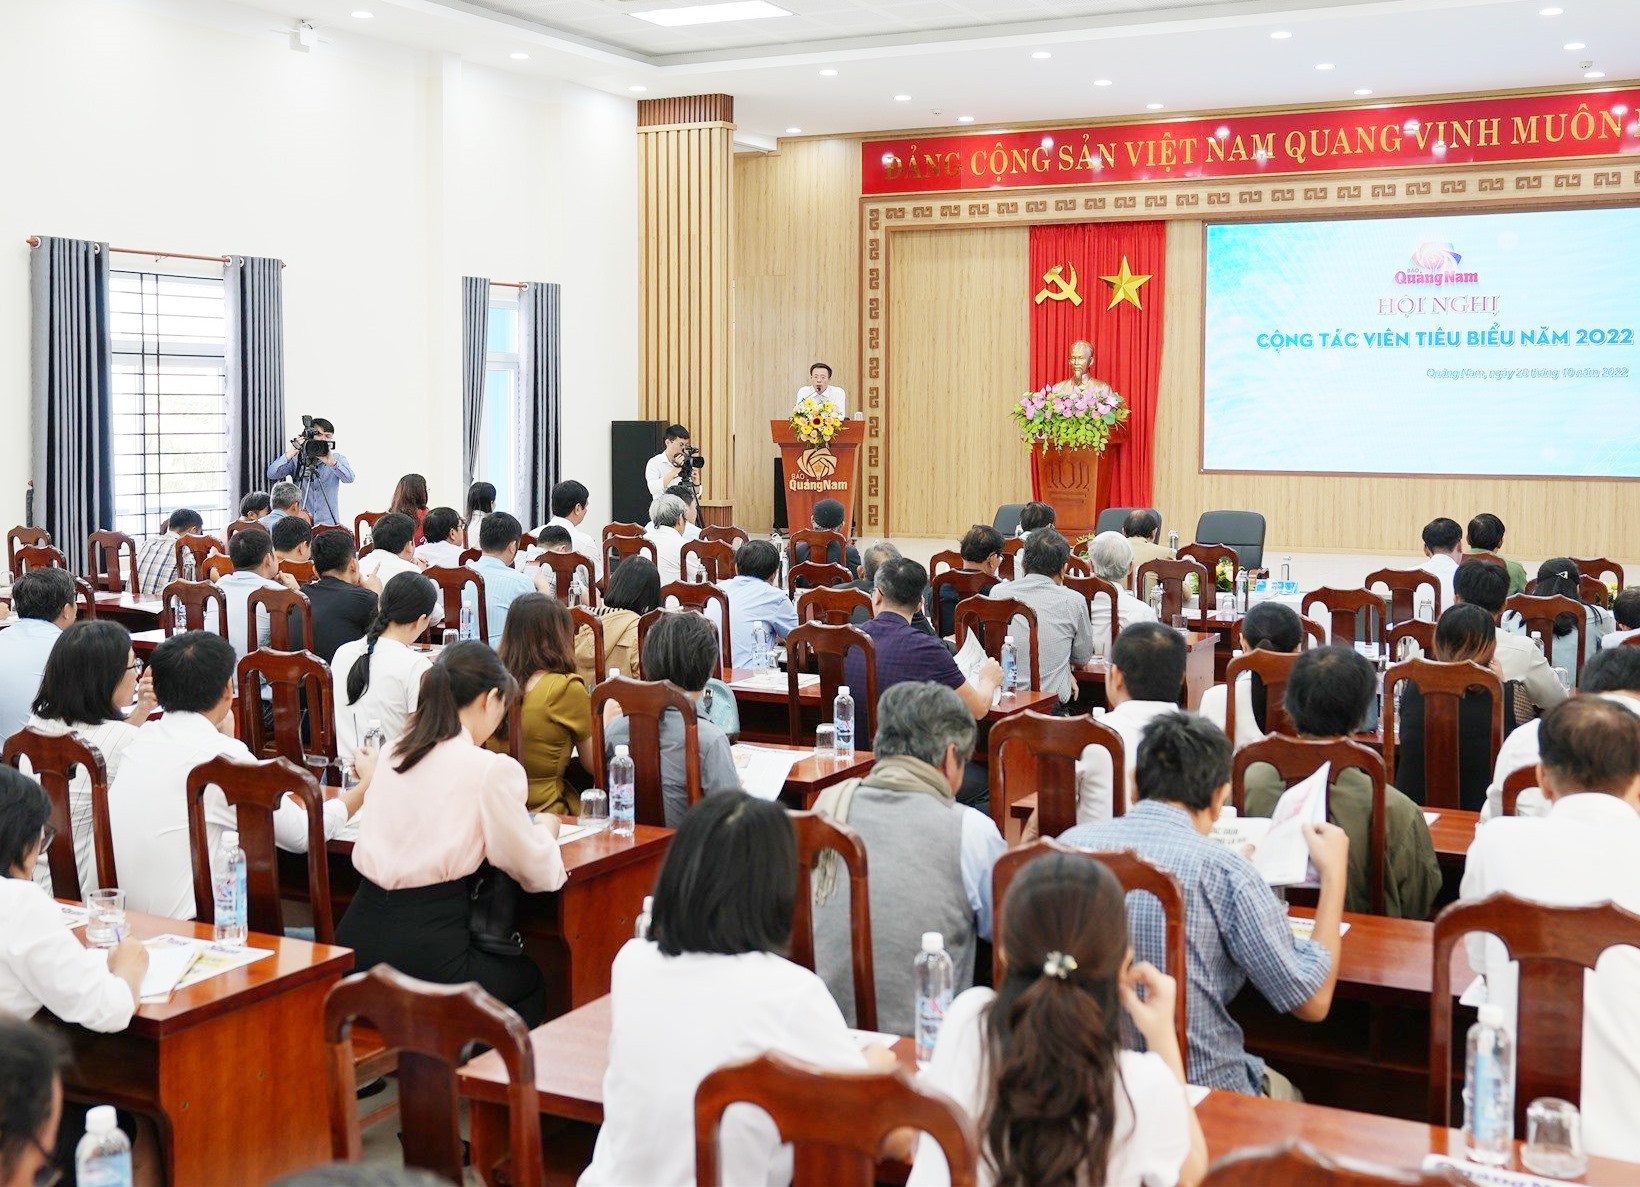 Hội nghị cộng tác viên tiêu biểu được Báo Quảng Nam tổ chức hằng năm.